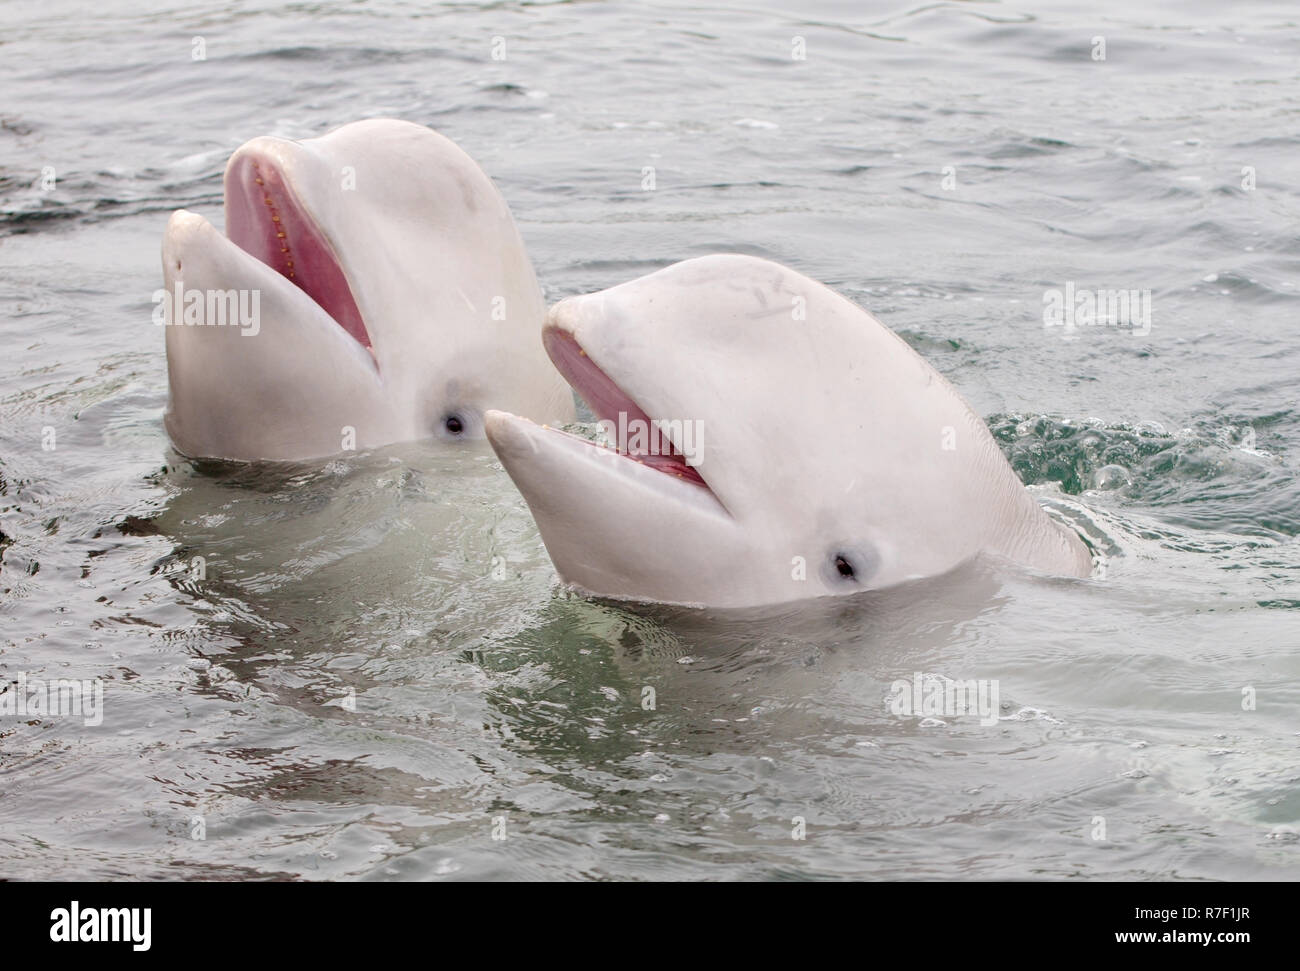 Two Beluga Whales or White Whales (Delphinapterus leucas), Sea of Japan, Primorsky Krai, Russia Stock Photo